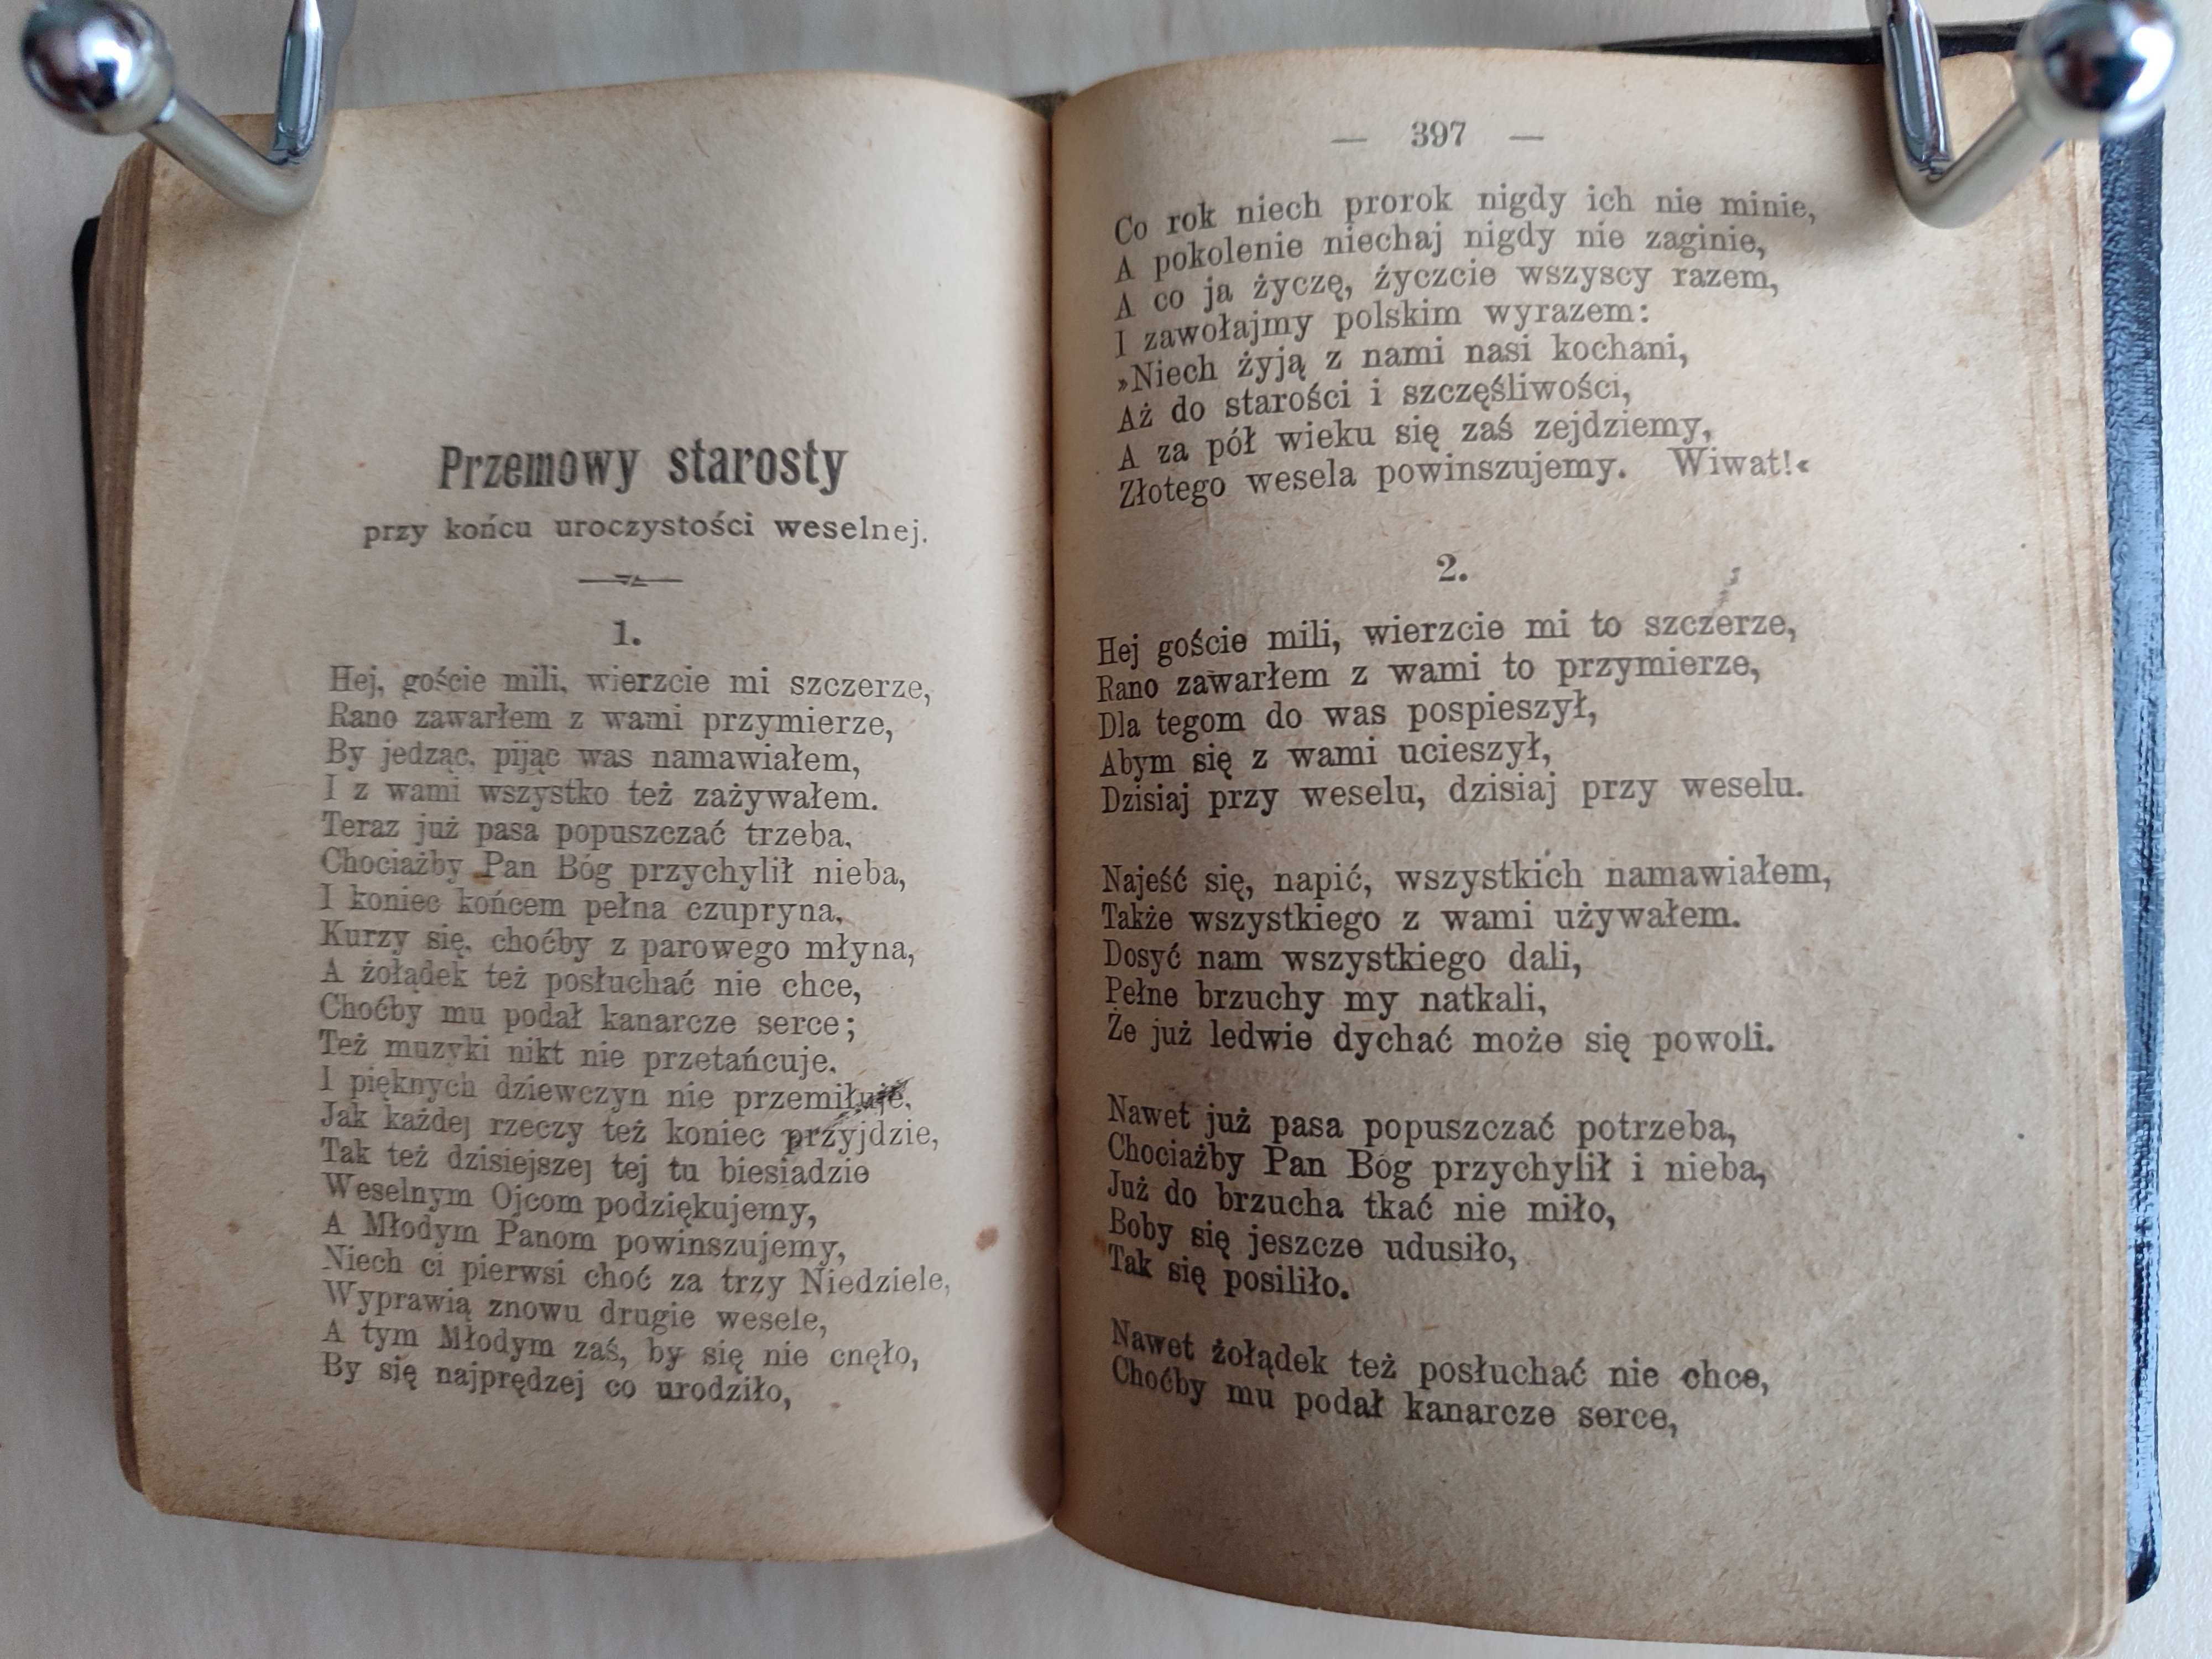 Starosta weselny – zb. Józef Gallus, książka unikat z 1907 r.